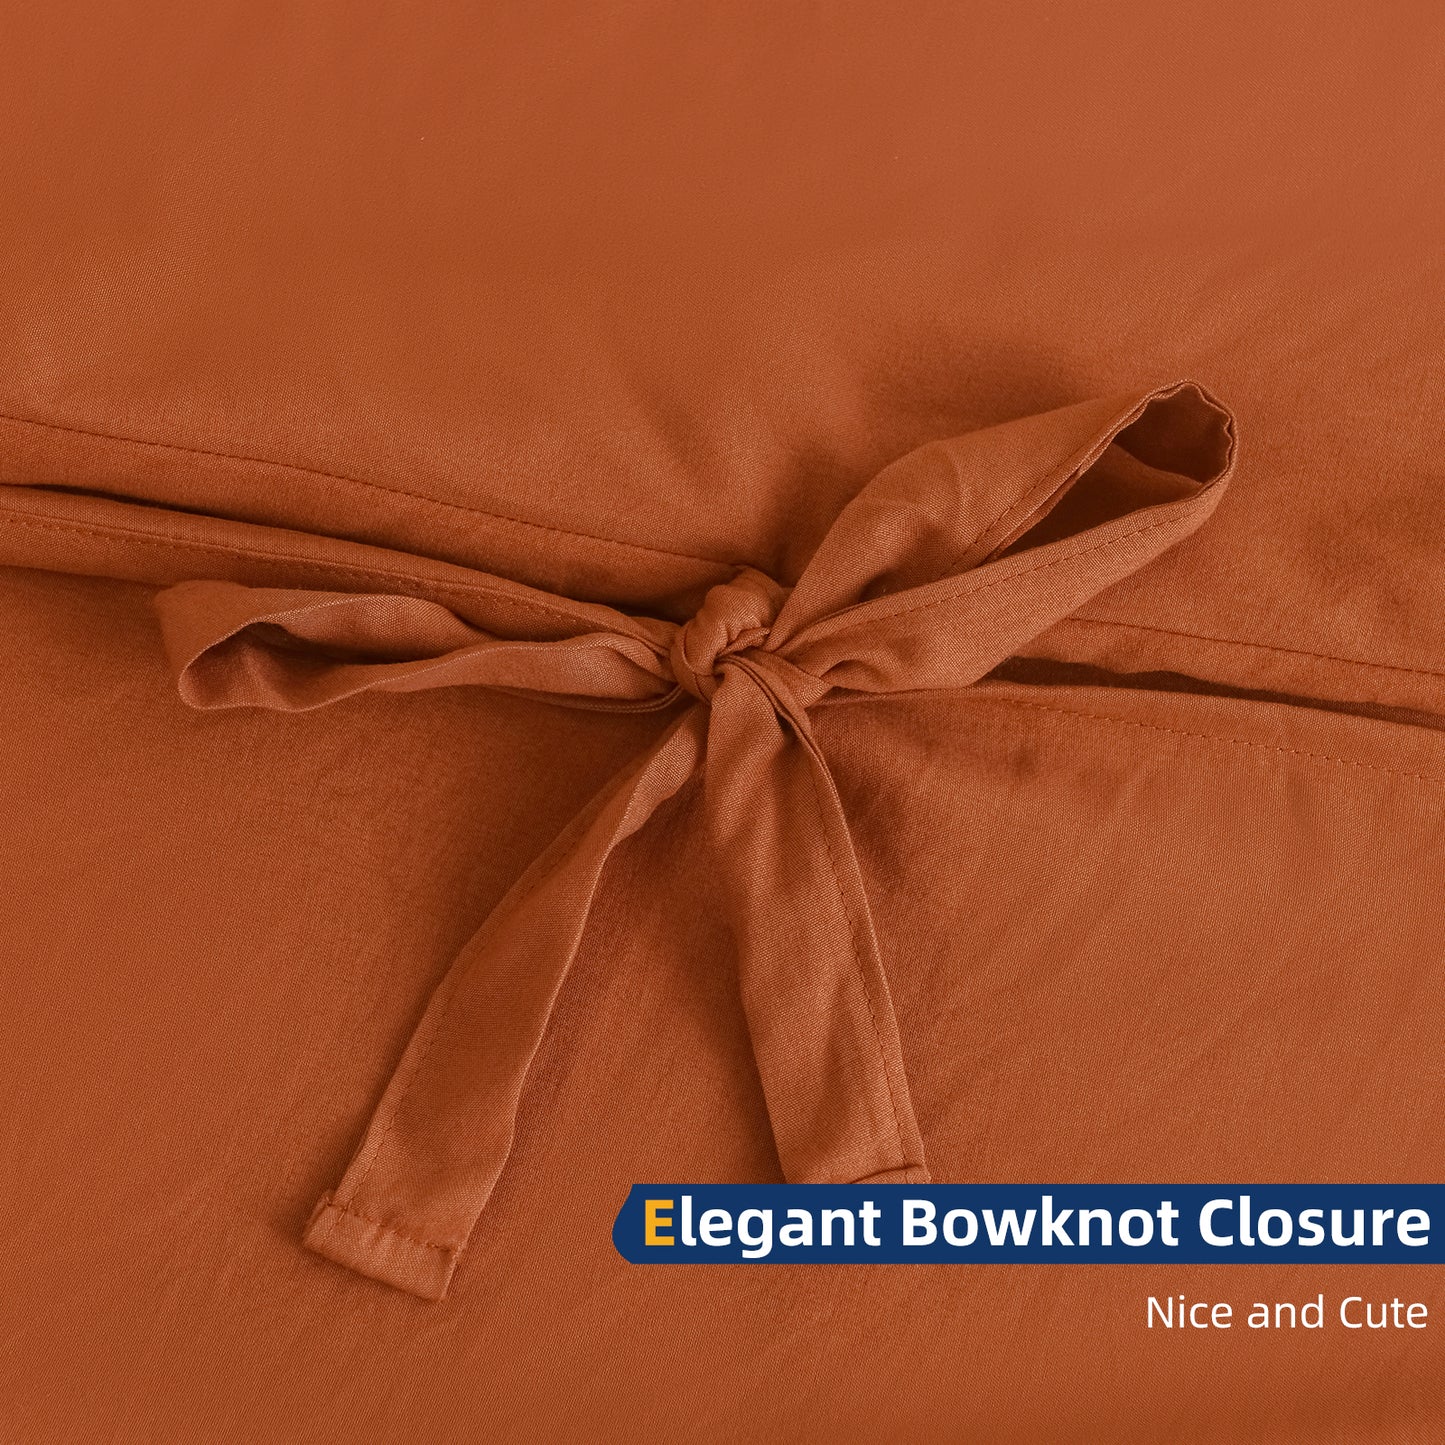 Argstar Bowknot Closure Duvet Cover Set Caramel Color